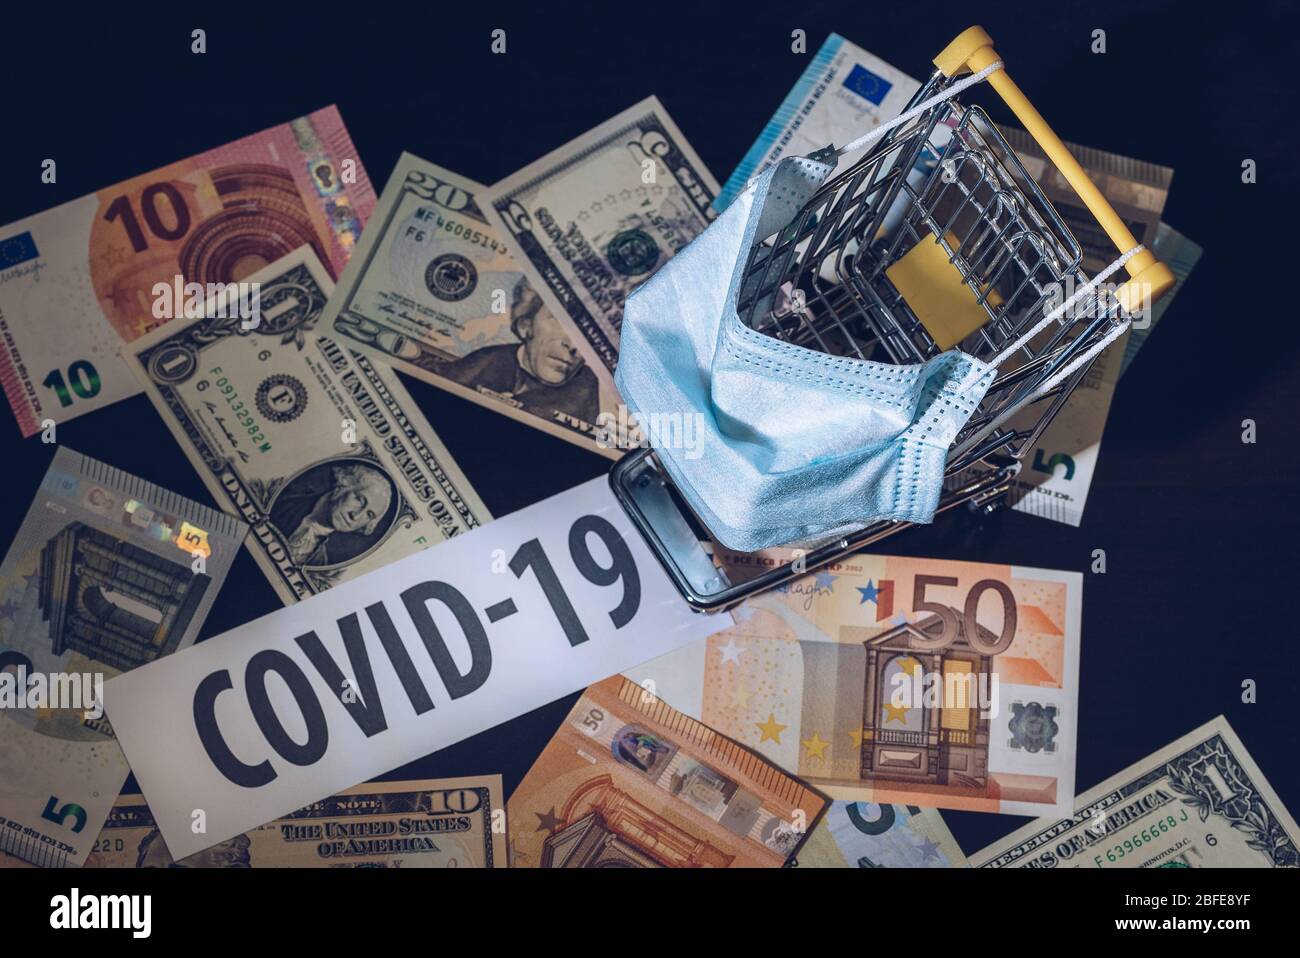 L'impatto del coronavirus sull'economia. Crisi economica e finanziaria. Calo dei consumi a causa dell'epidemia di COVID-19. Foto Stock